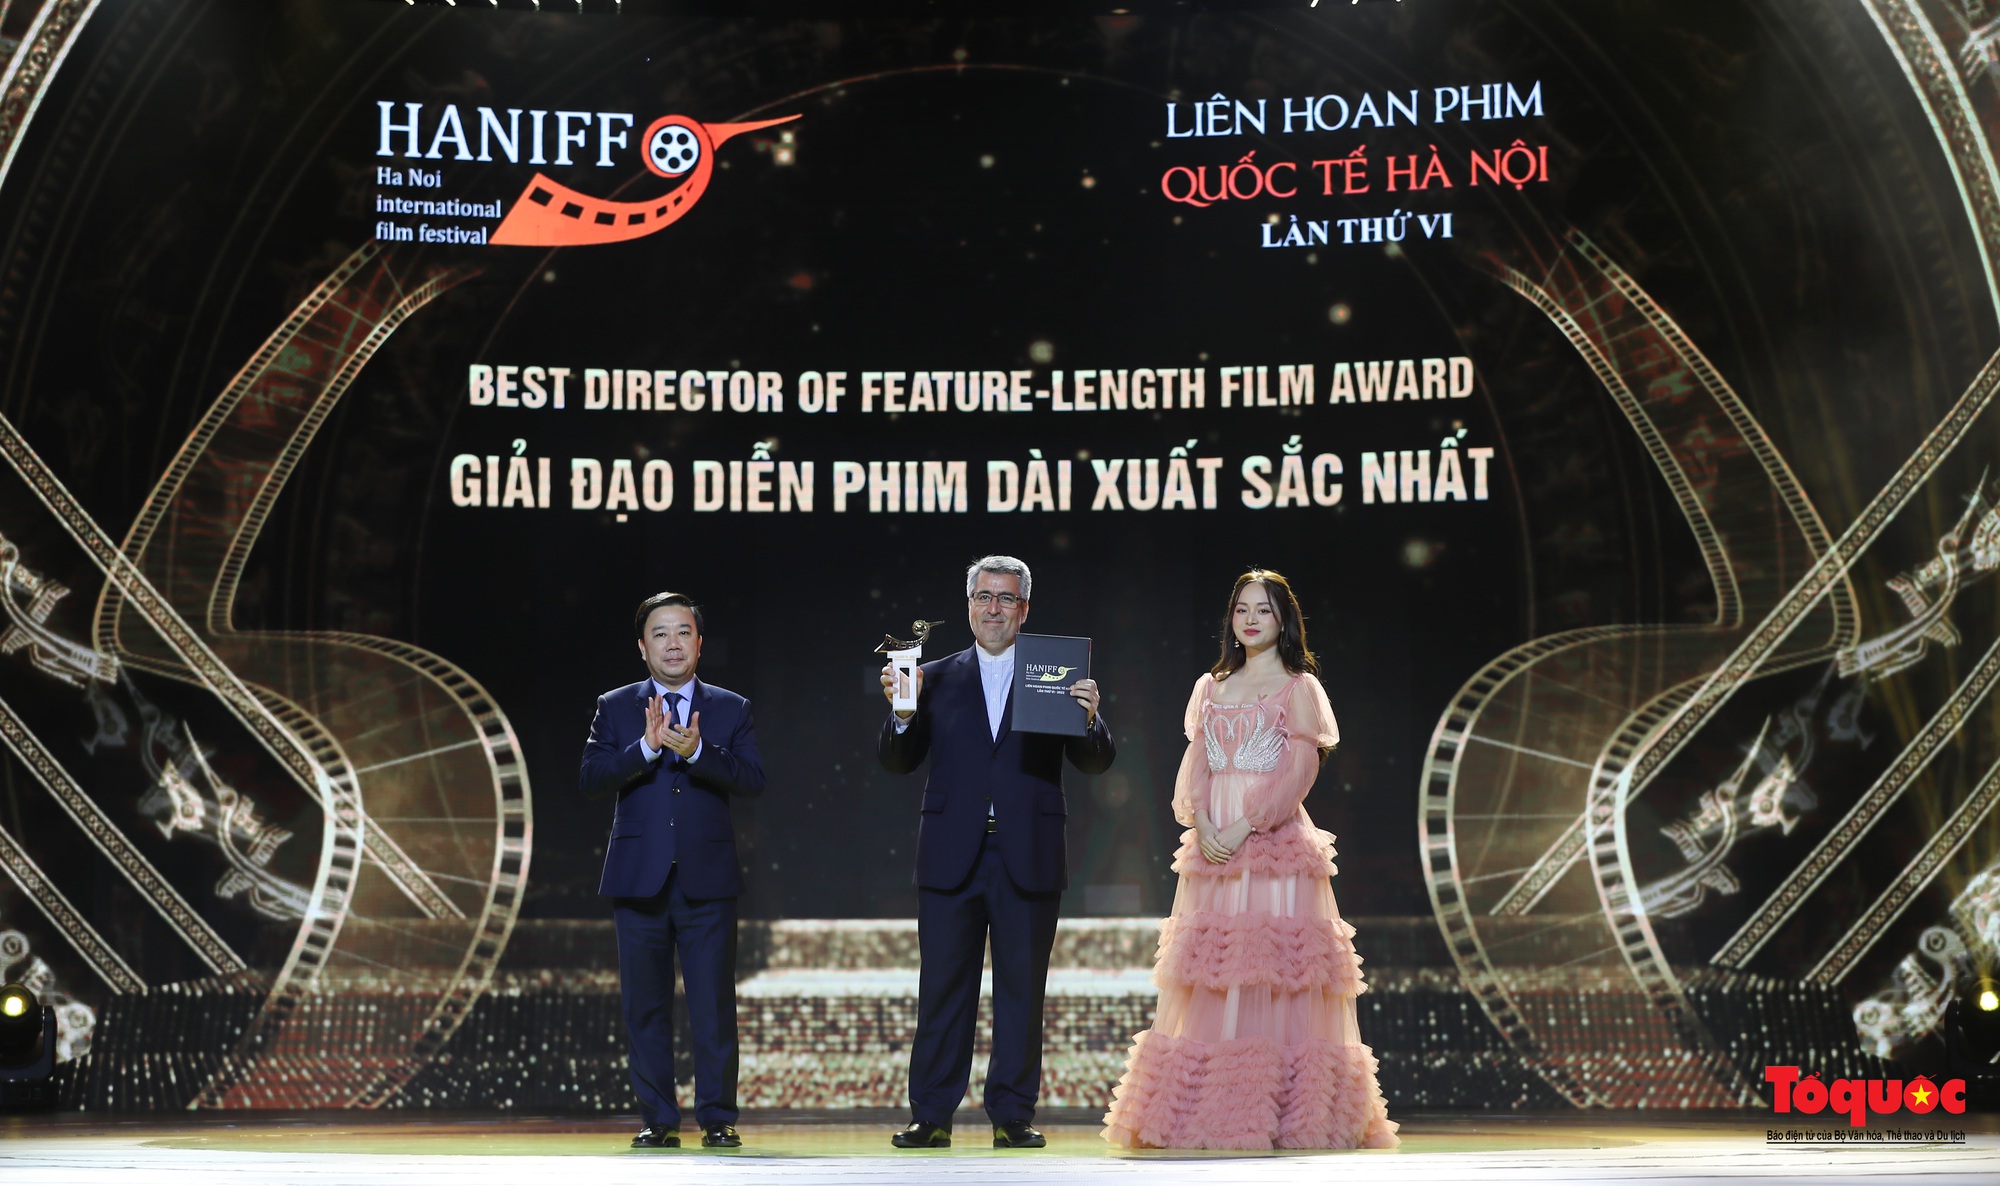 Bế mạc HANIFF 2022: 12 hàng mục giải thưởng trao cho các bộ phim, diễn viên, đạo diễn xuất sắc - Ảnh 7.